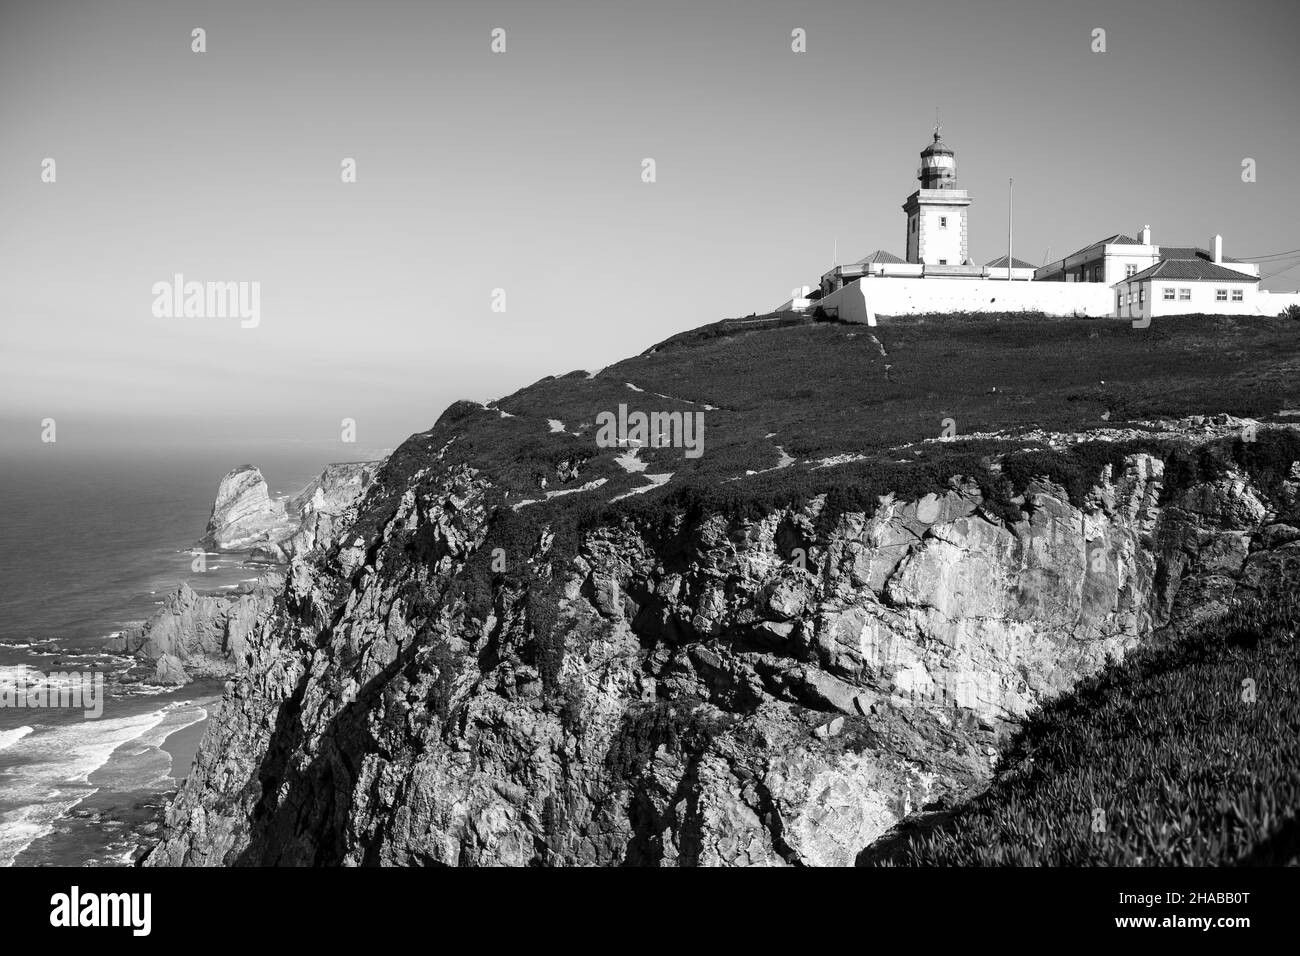 Vue sur le phare de Cabo da Roca.Sintra, Portugal.Photo en noir et blanc. Banque D'Images